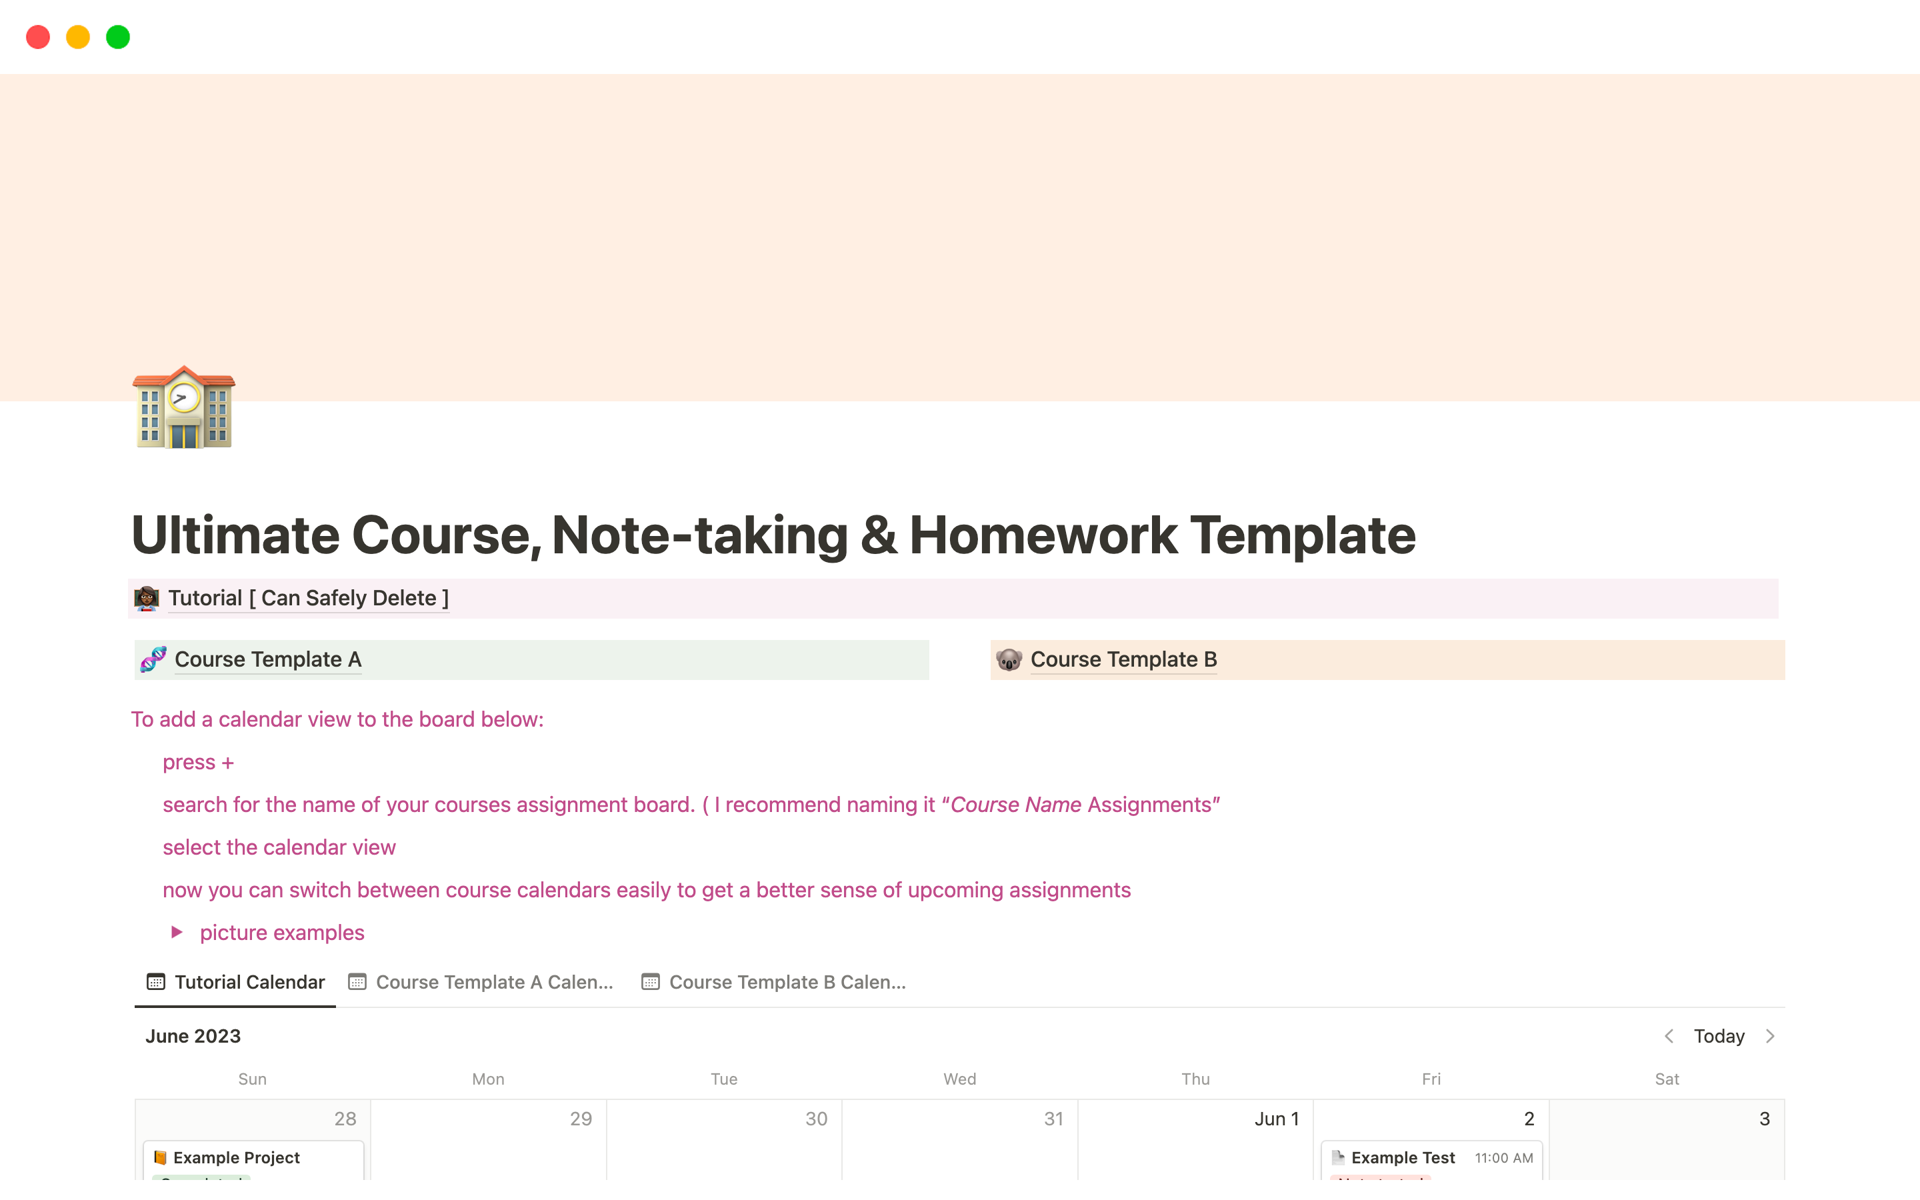 Uma prévia do modelo para Ultimate Course, Note Taking & Homework Template